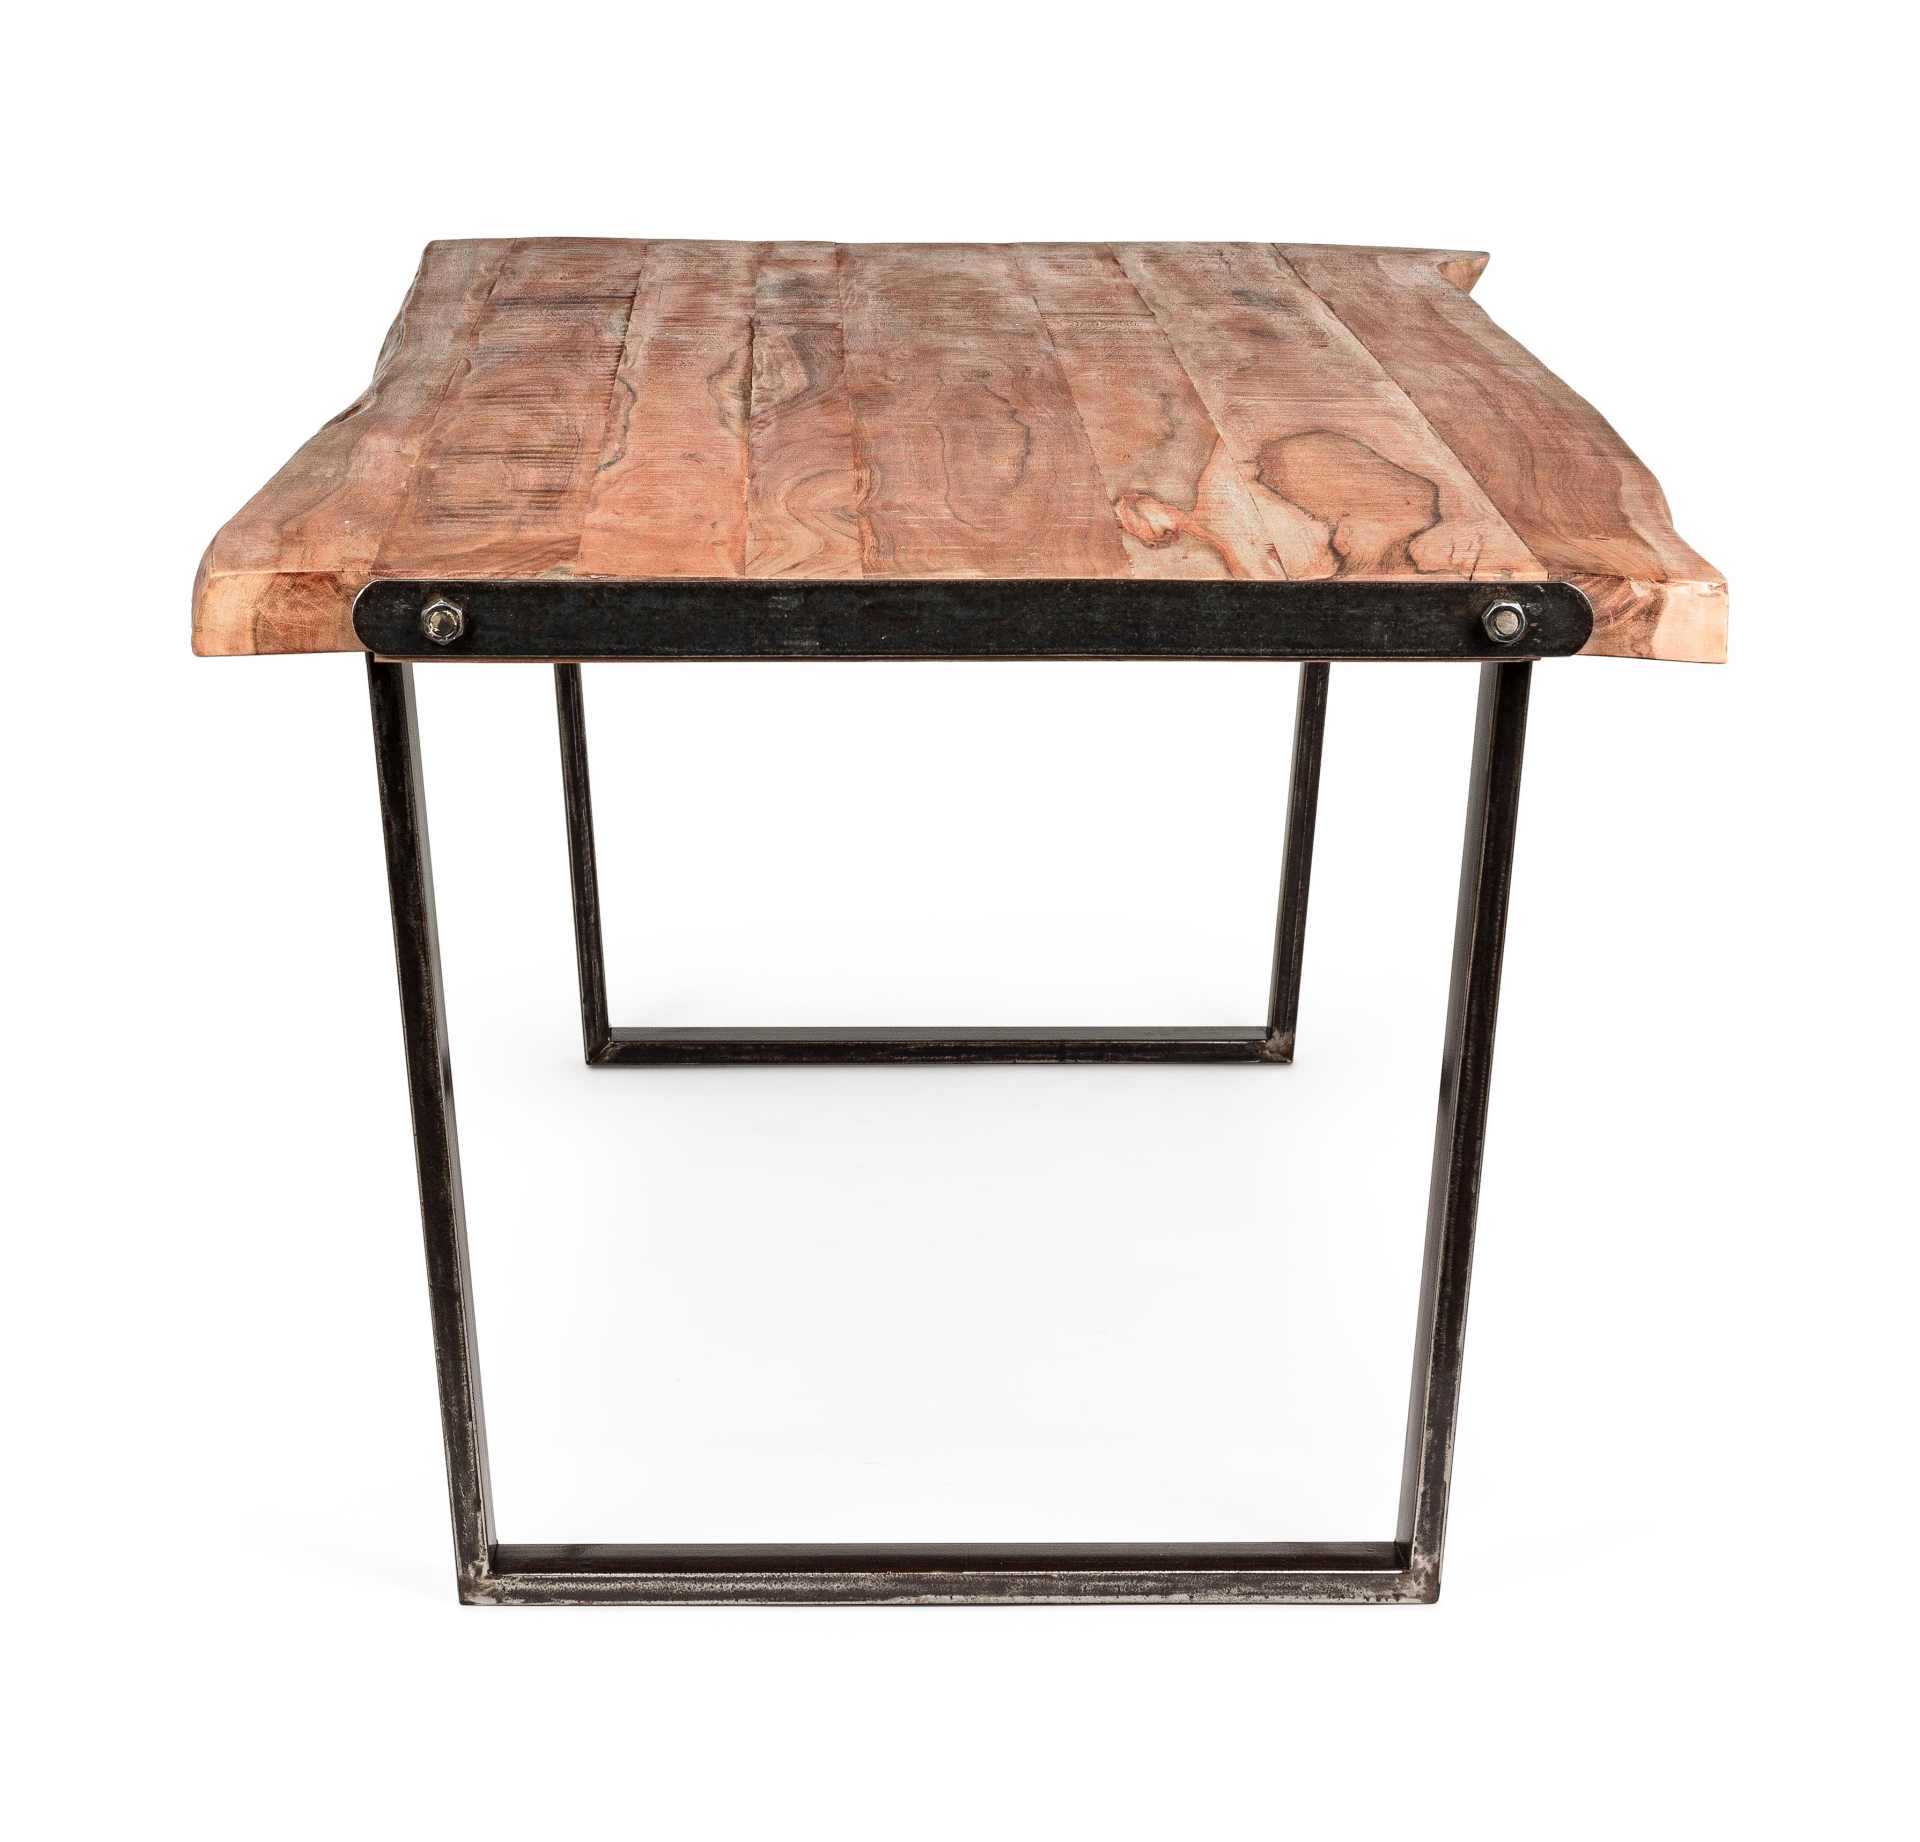 Der Esstisch Elmer überzeugt mit seinem moderndem Design. Gefertigt wurde er aus Akazienholz, welches einen natürlichen Farbton besitzt. Das Gestell des Tisches ist aus Metall und ist in eine schwarze Farbe. Der Tisch besitzt eine Breite von 220 cm.